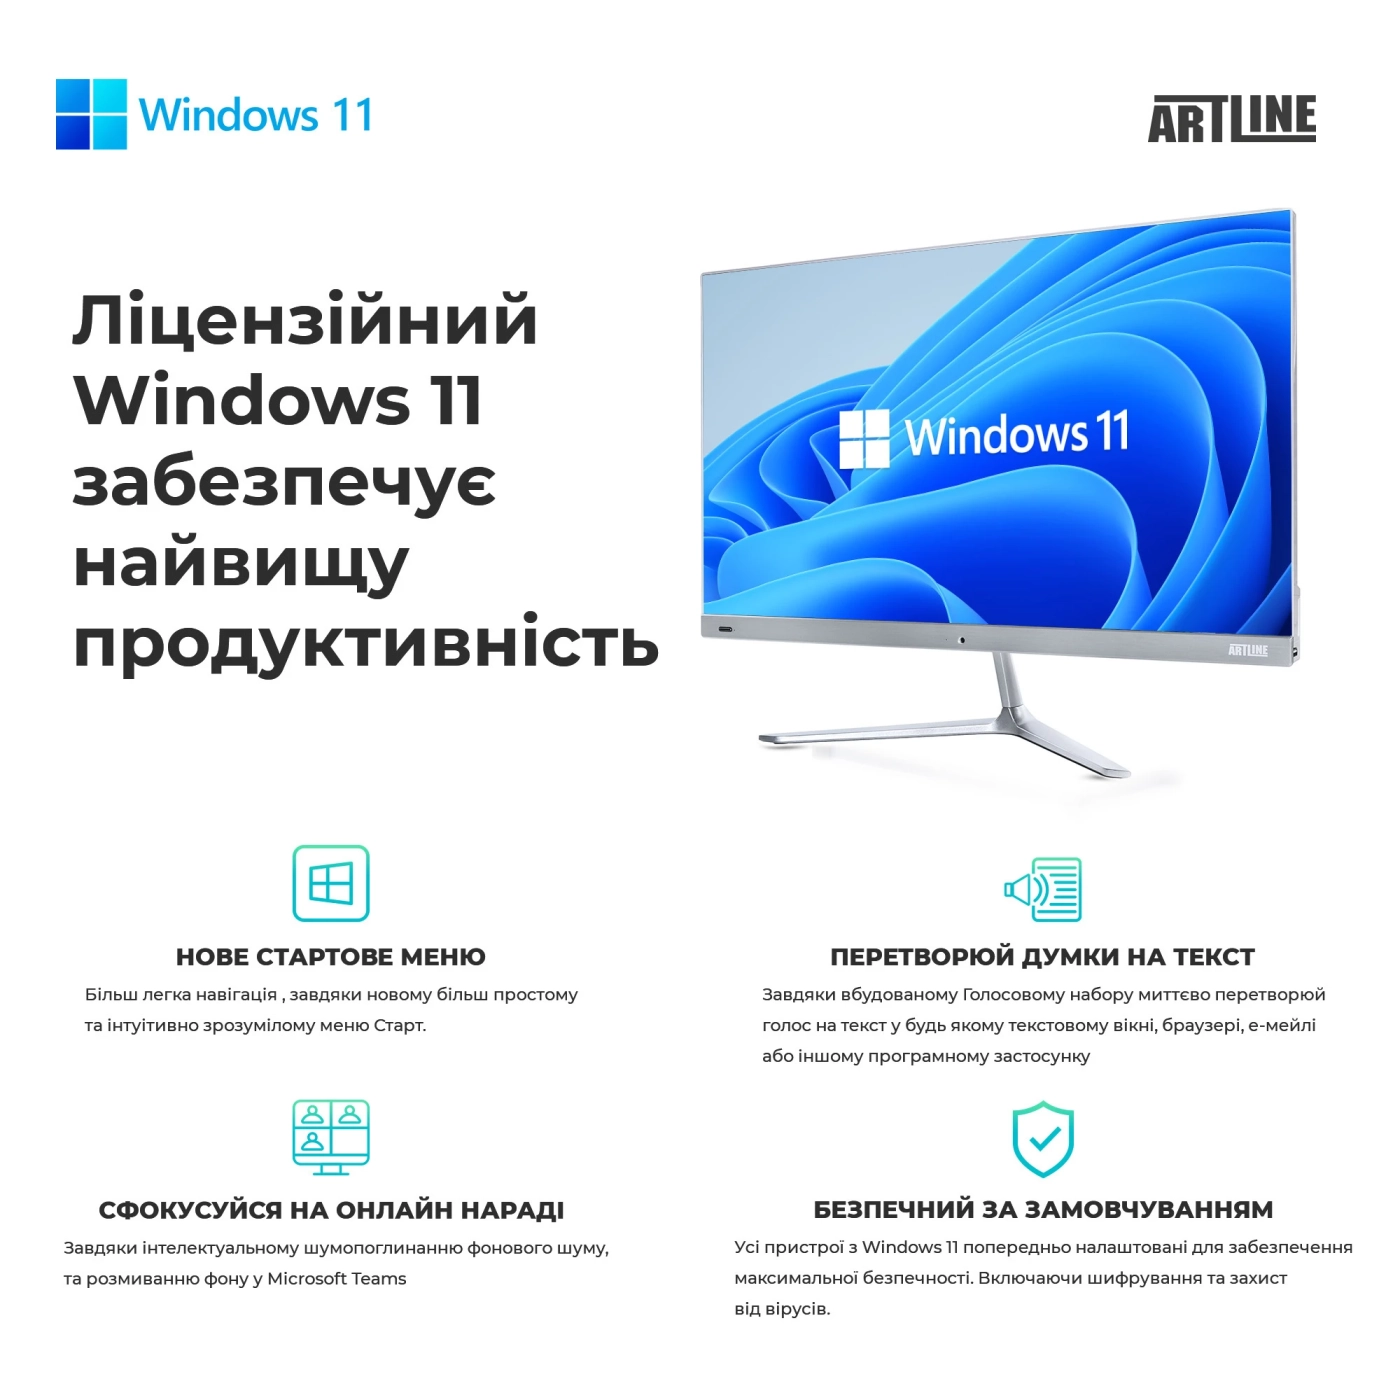 Купить Рабочая станция ARTLINE WorkStation W96 Windows 11 Pro (W96v20Win) - фото 10